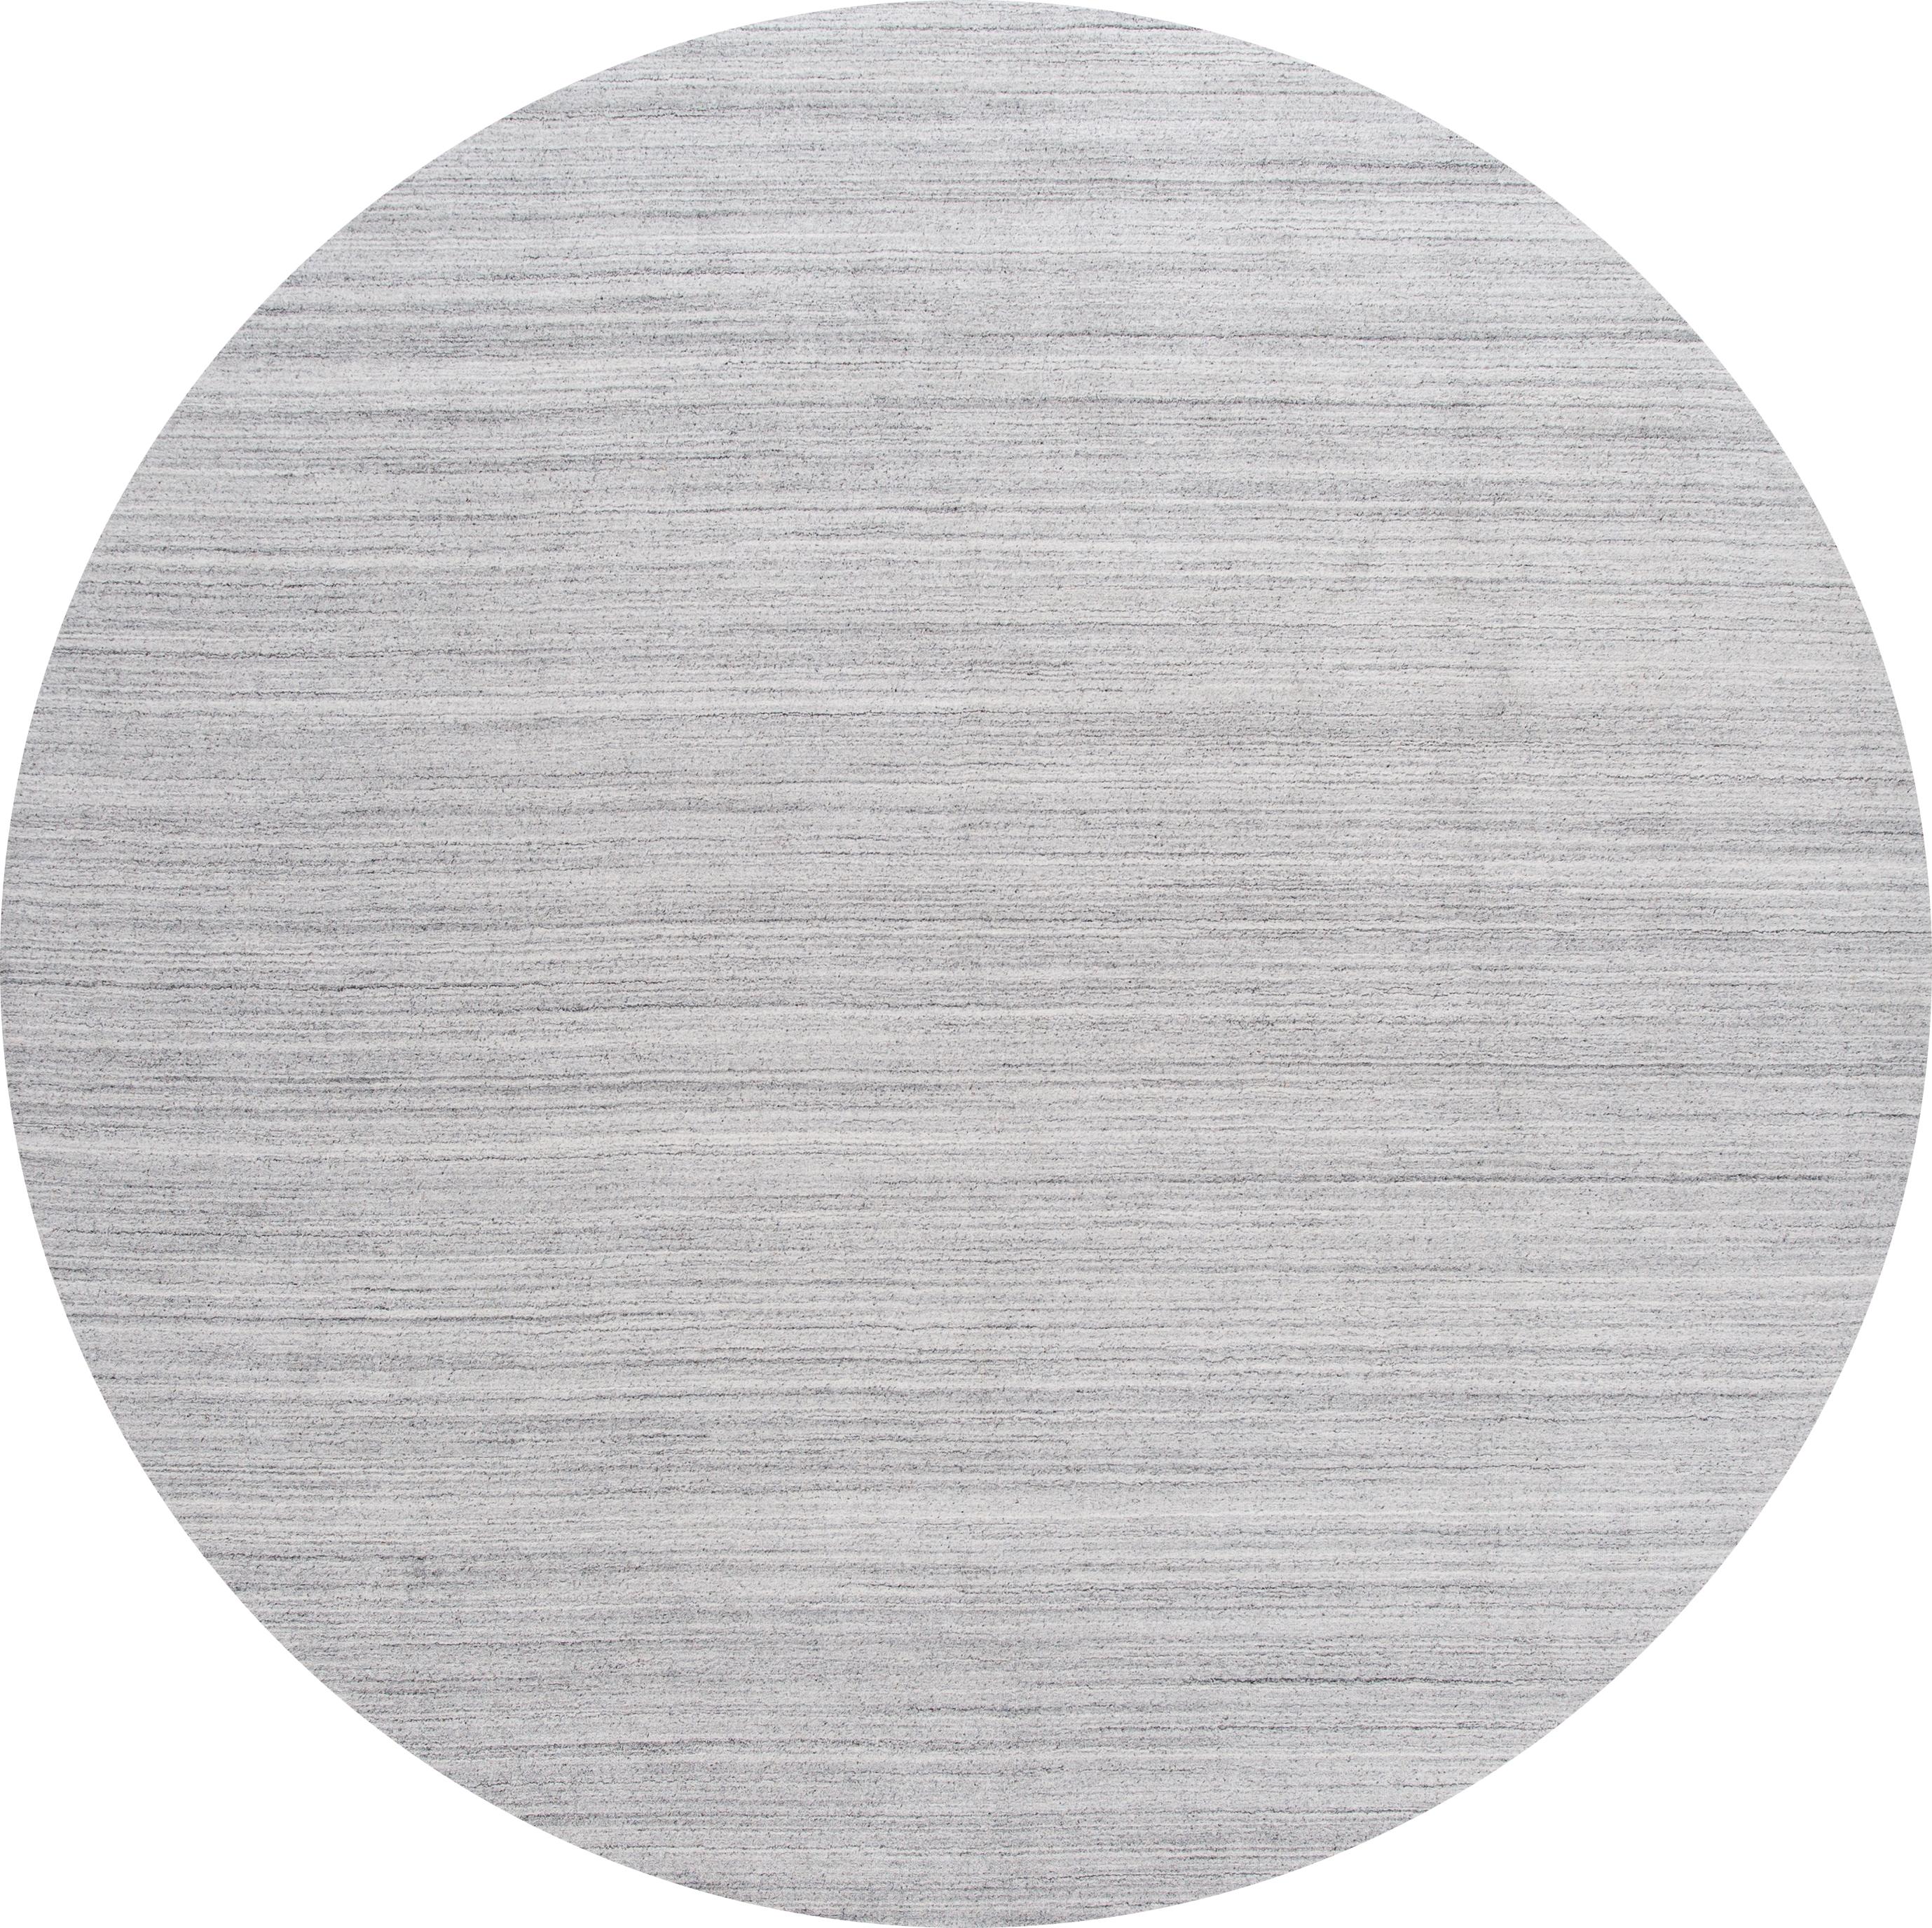 Schöner solider Teppich aus dem 21. Jahrhundert, handgeknüpft aus Wolle mit grauem Feld und dezenten Streifenakzenten in einem soliden Design.
Dieser Teppich misst: 10